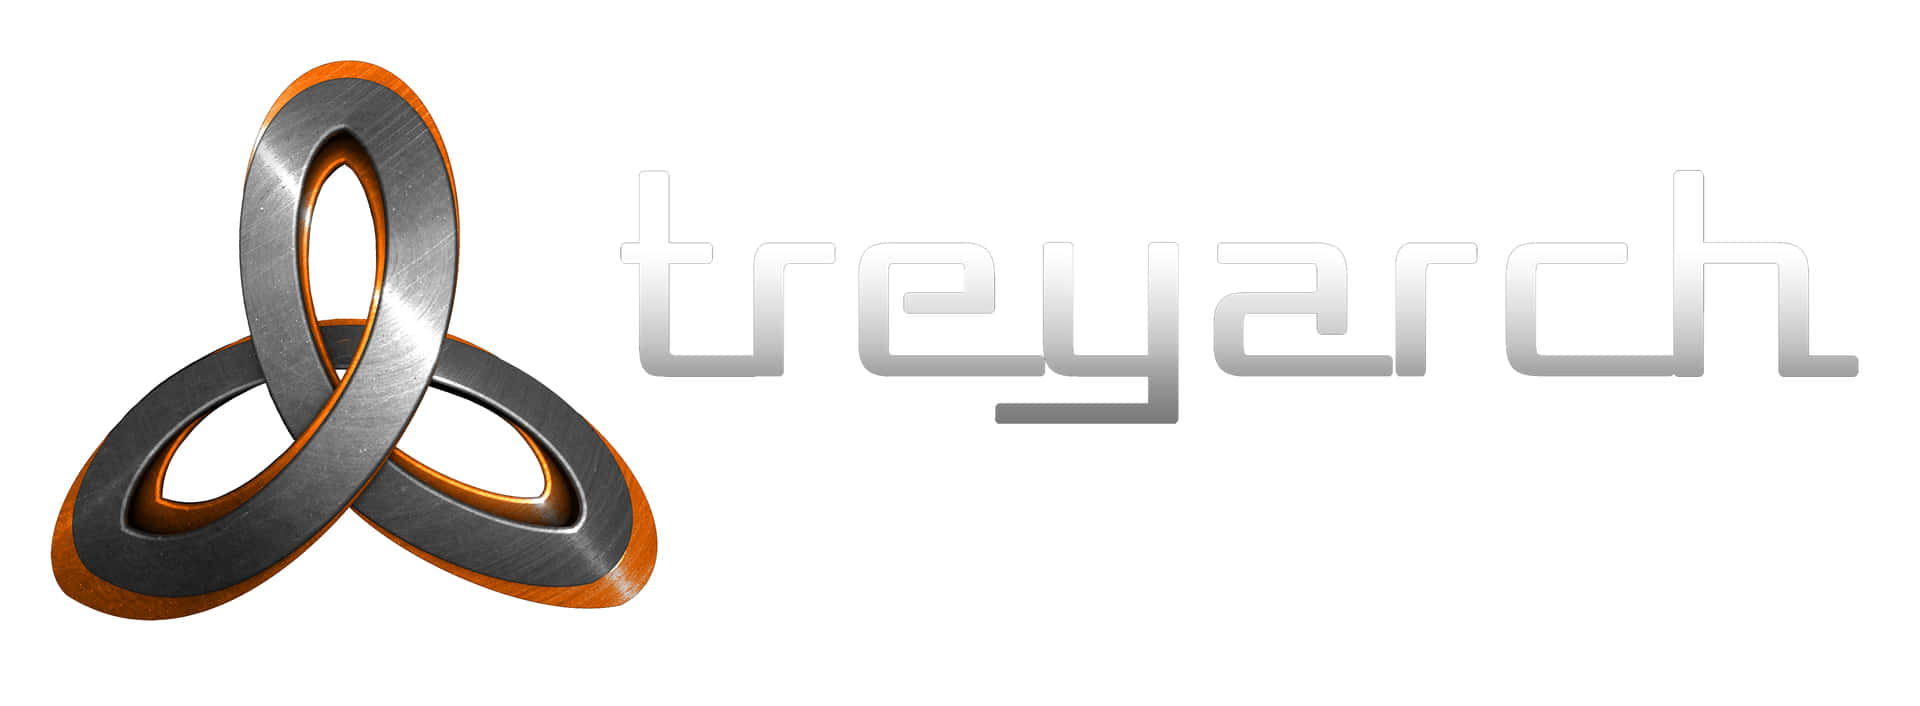 Logotipodel Estudio De Videojuegos Treyarch. Fondo de pantalla